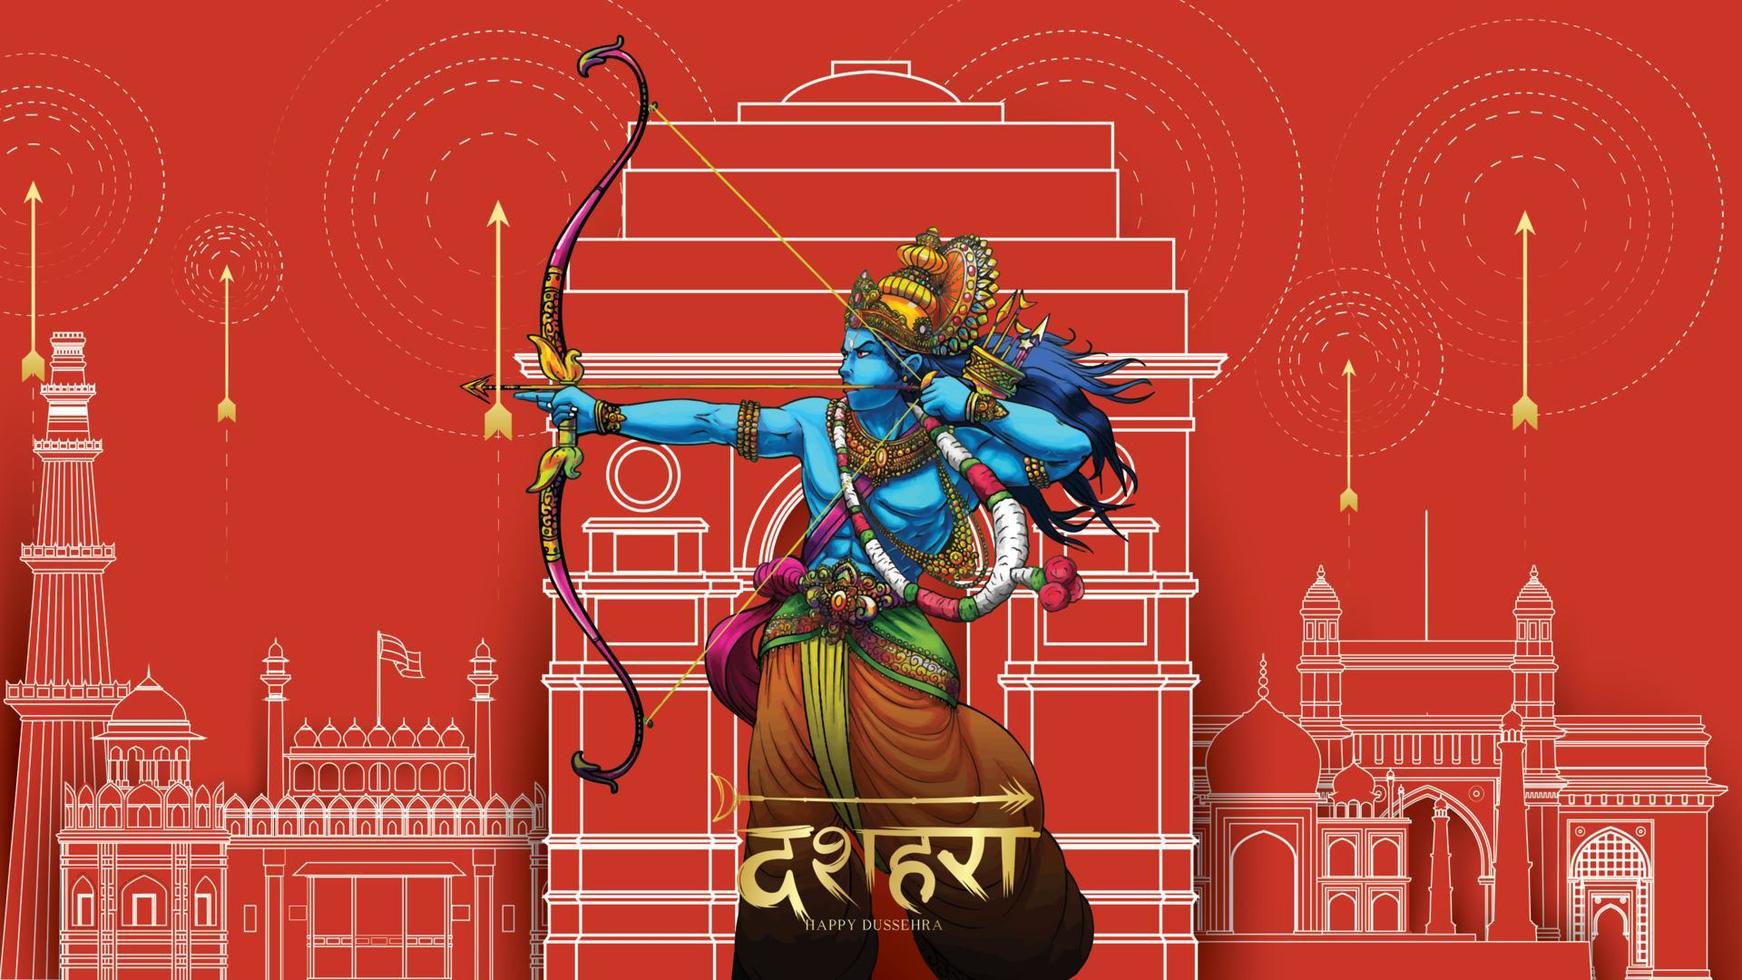 lord rama dödar ravana i glad dussehra navratri affischfestival i Indien. översättning dussehra vektor